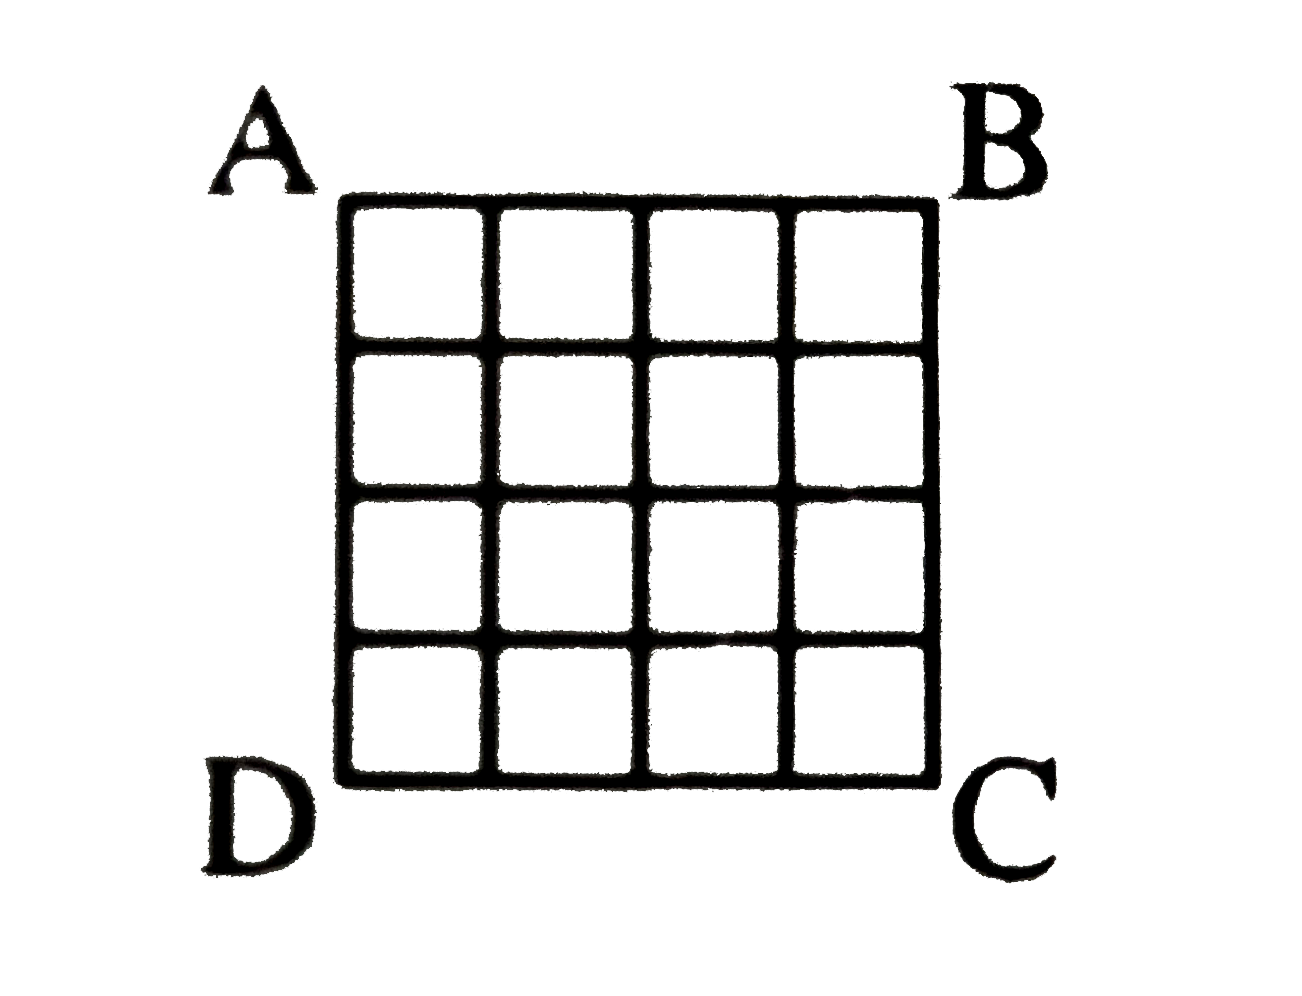 दी गई वर्ग आकृति ABCD में कितने वर्ग है ?